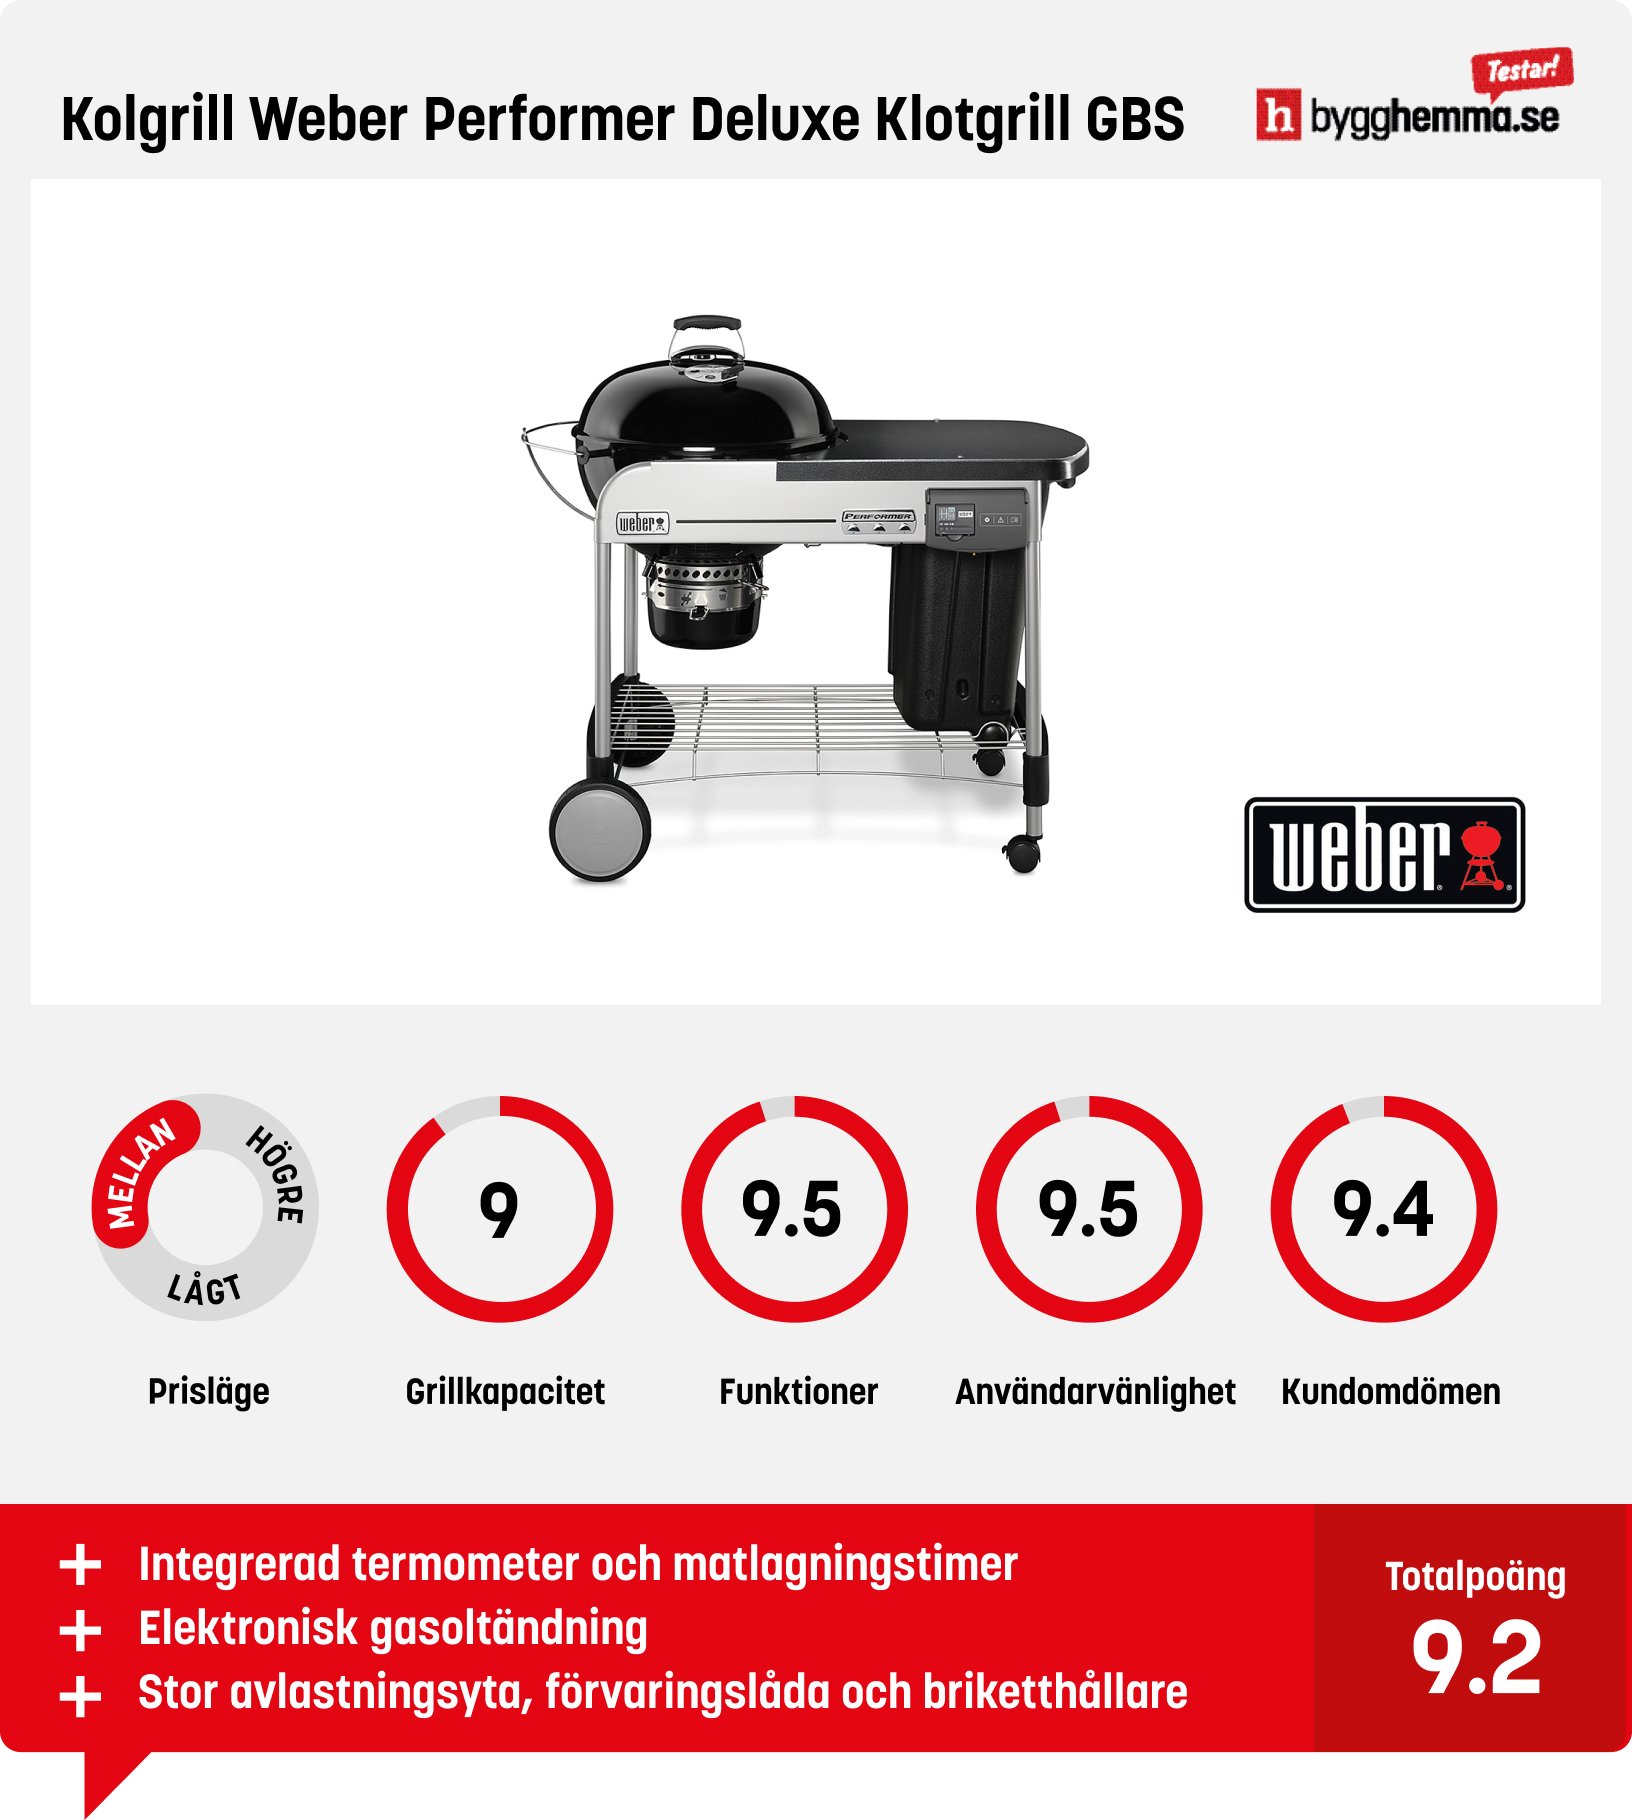 Kolgrill bäst i test - Kolgrill Weber Performer Deluxe Klotgrill GBS